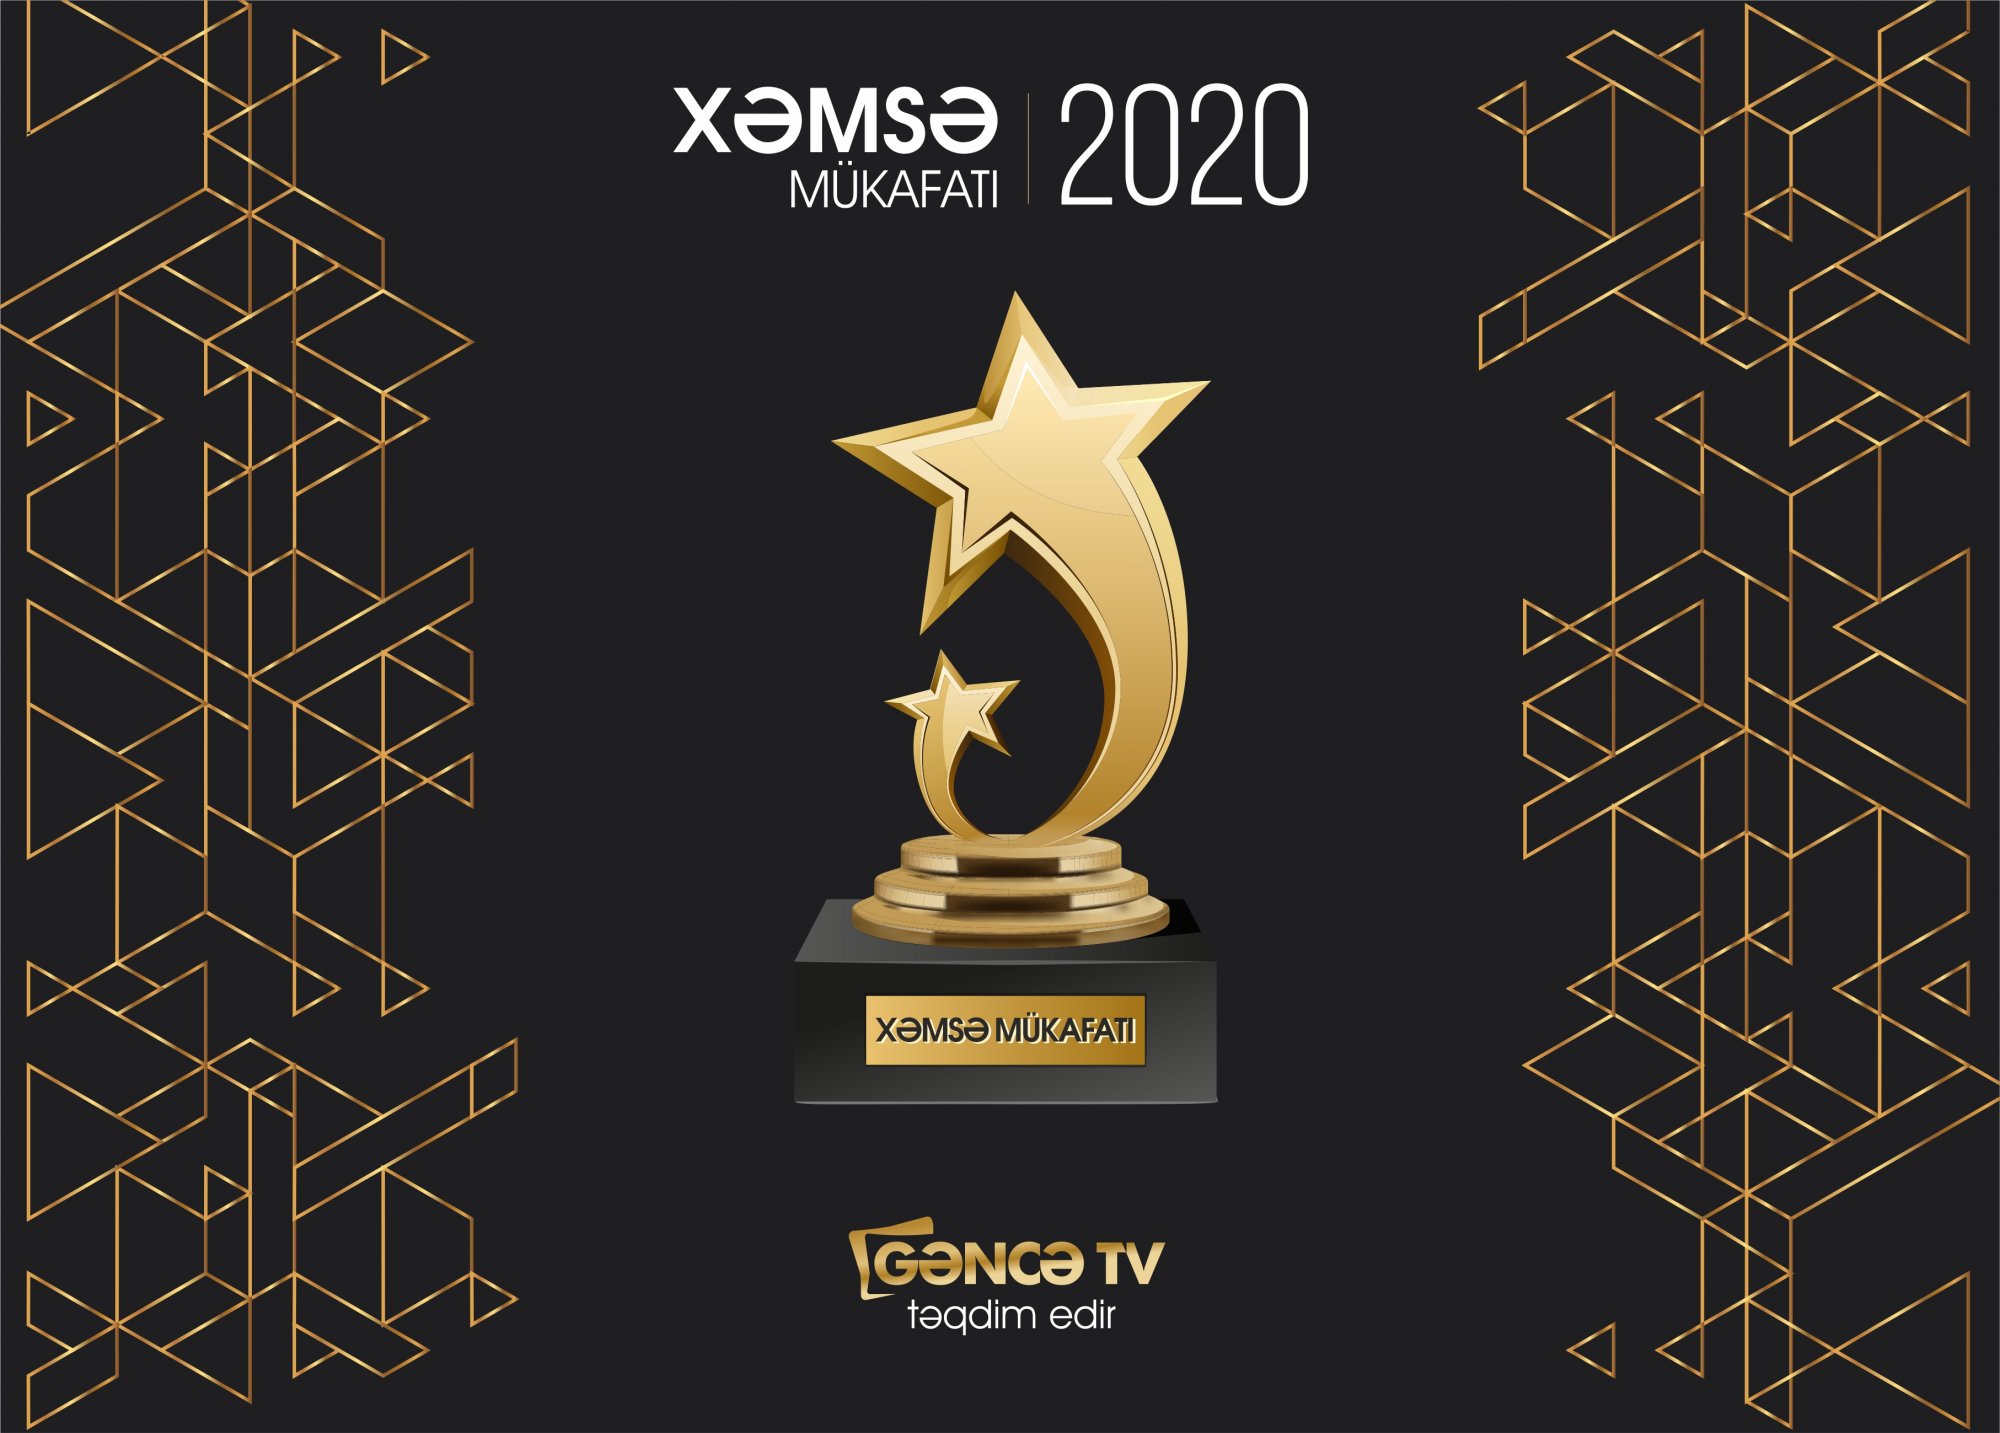 Gəncə TV internet televizyası "XƏMSƏ 2020 MÜKAFATI"-nı təsis edir.